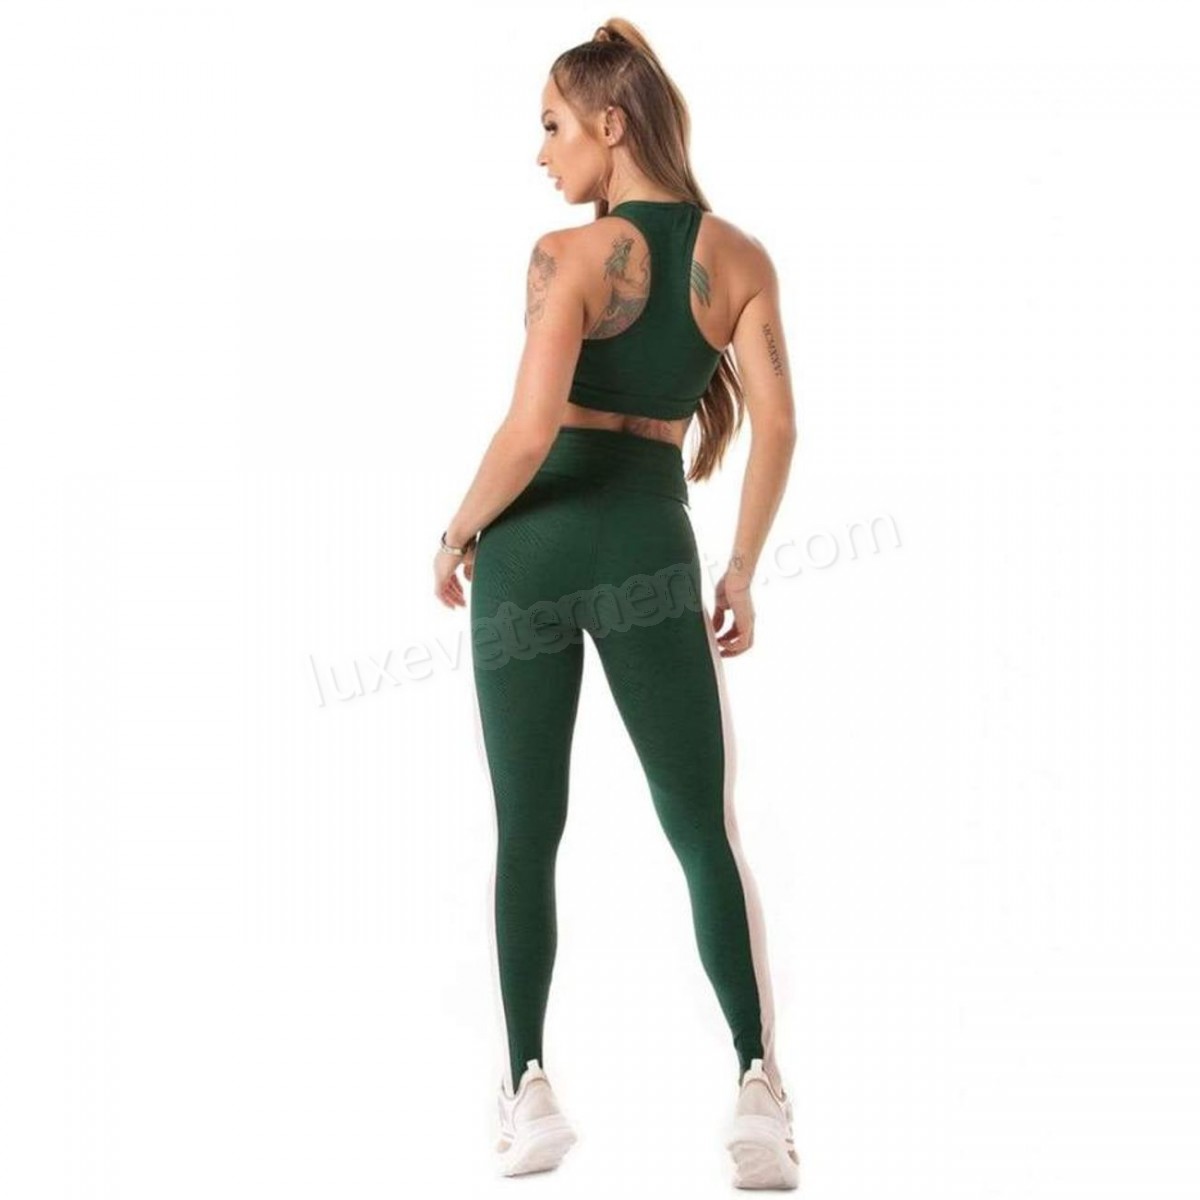 Let's Gym-Musculation femme Let's Gym Legging Femme Botanical Jacquard Let's Gym Vente en ligne - -1